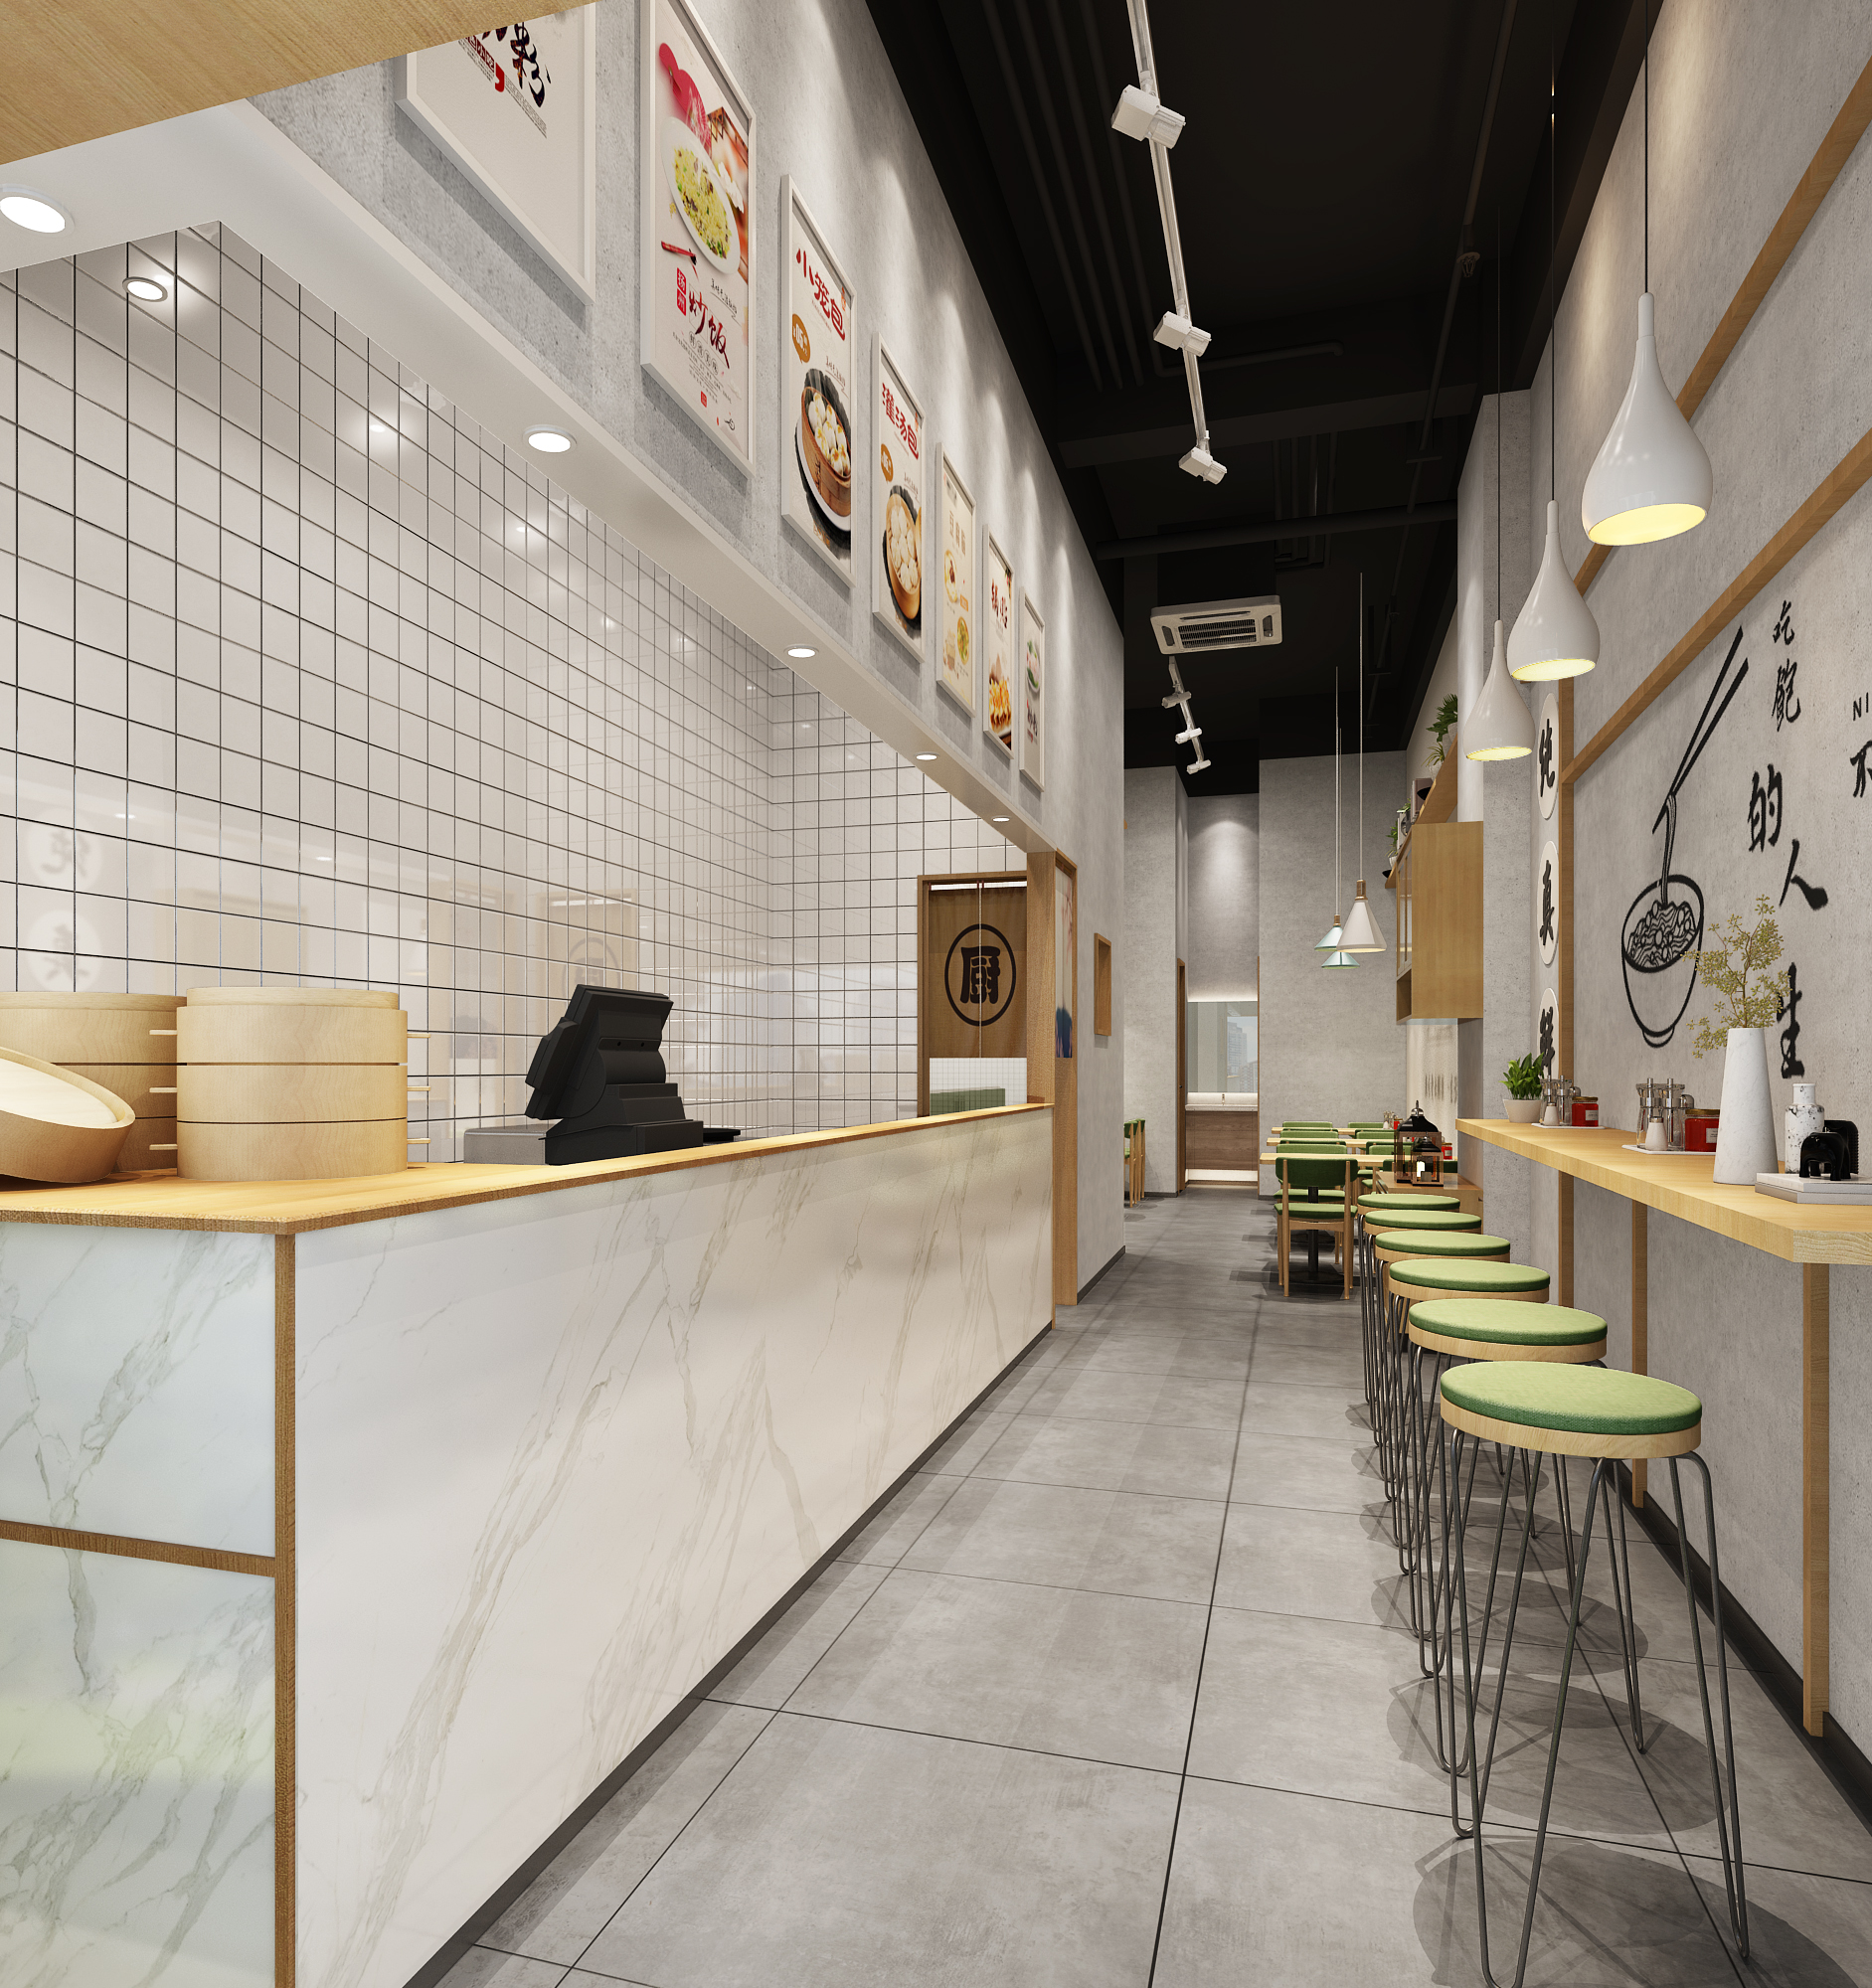 粉面店设计定制高端快餐连锁餐饮店主题咖啡厅效果图制作公装装修